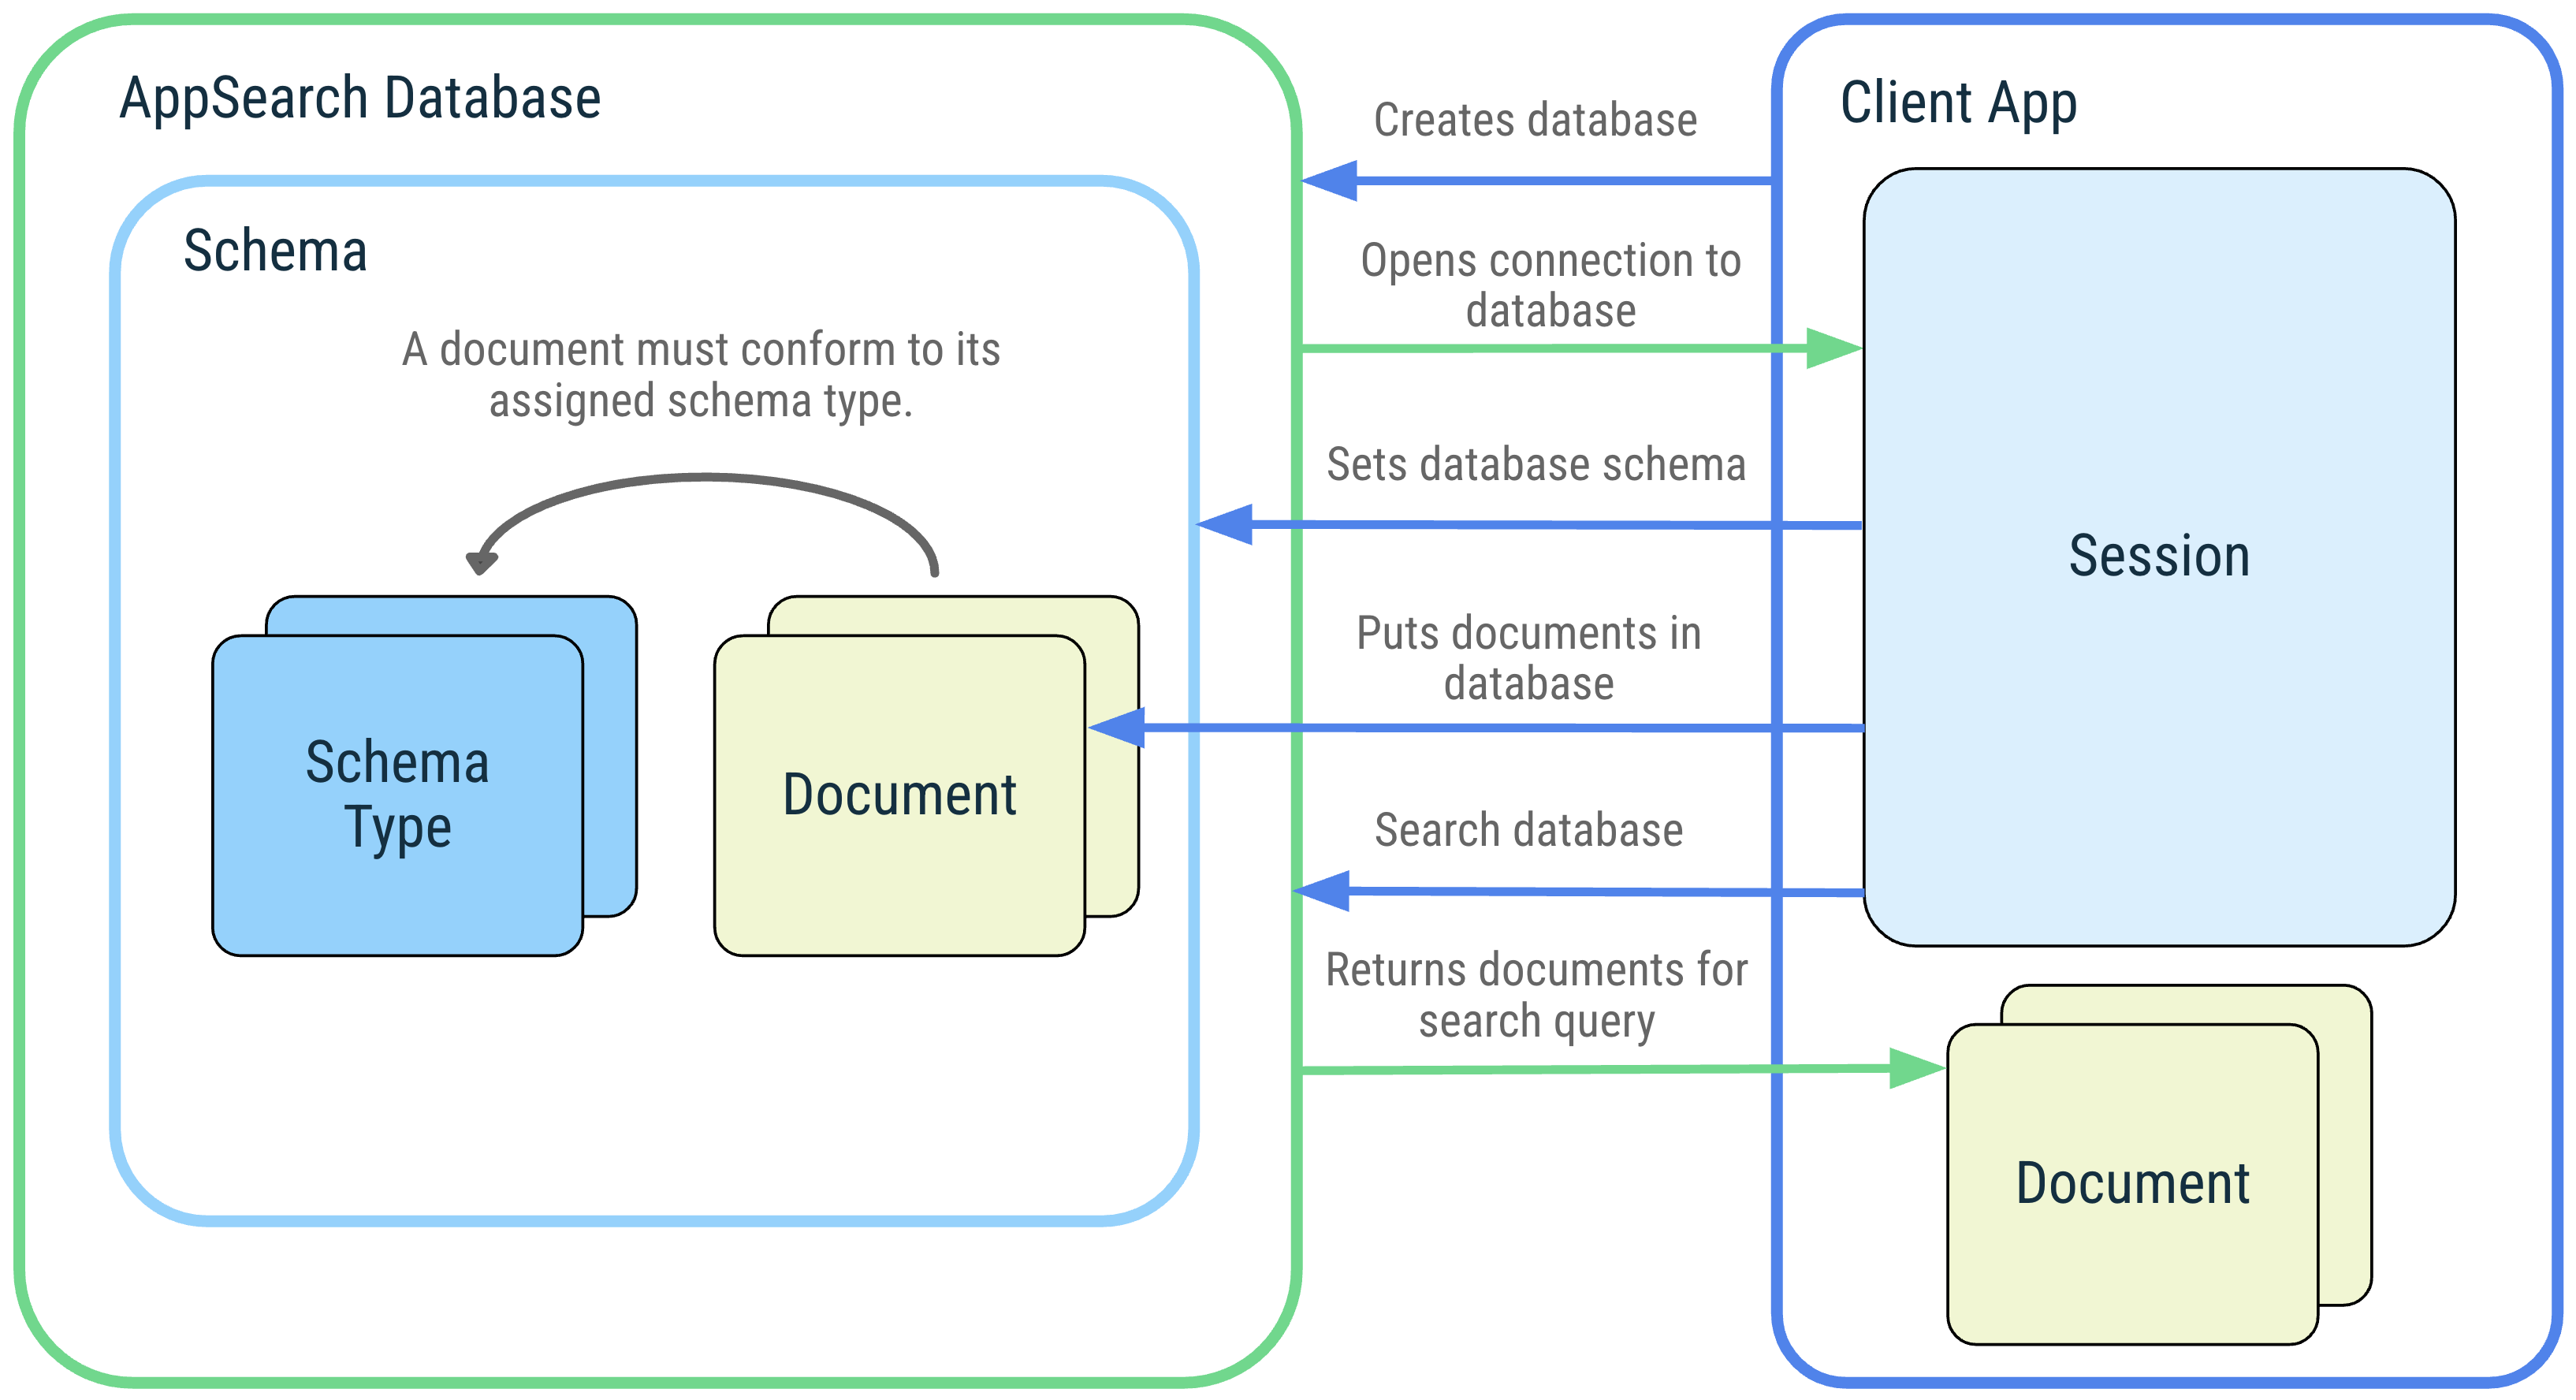 客户端应用及其与以下 AppSearch 概念的交互示意图：AppSearch 数据库、架构、架构类型、文档、会话和搜索。